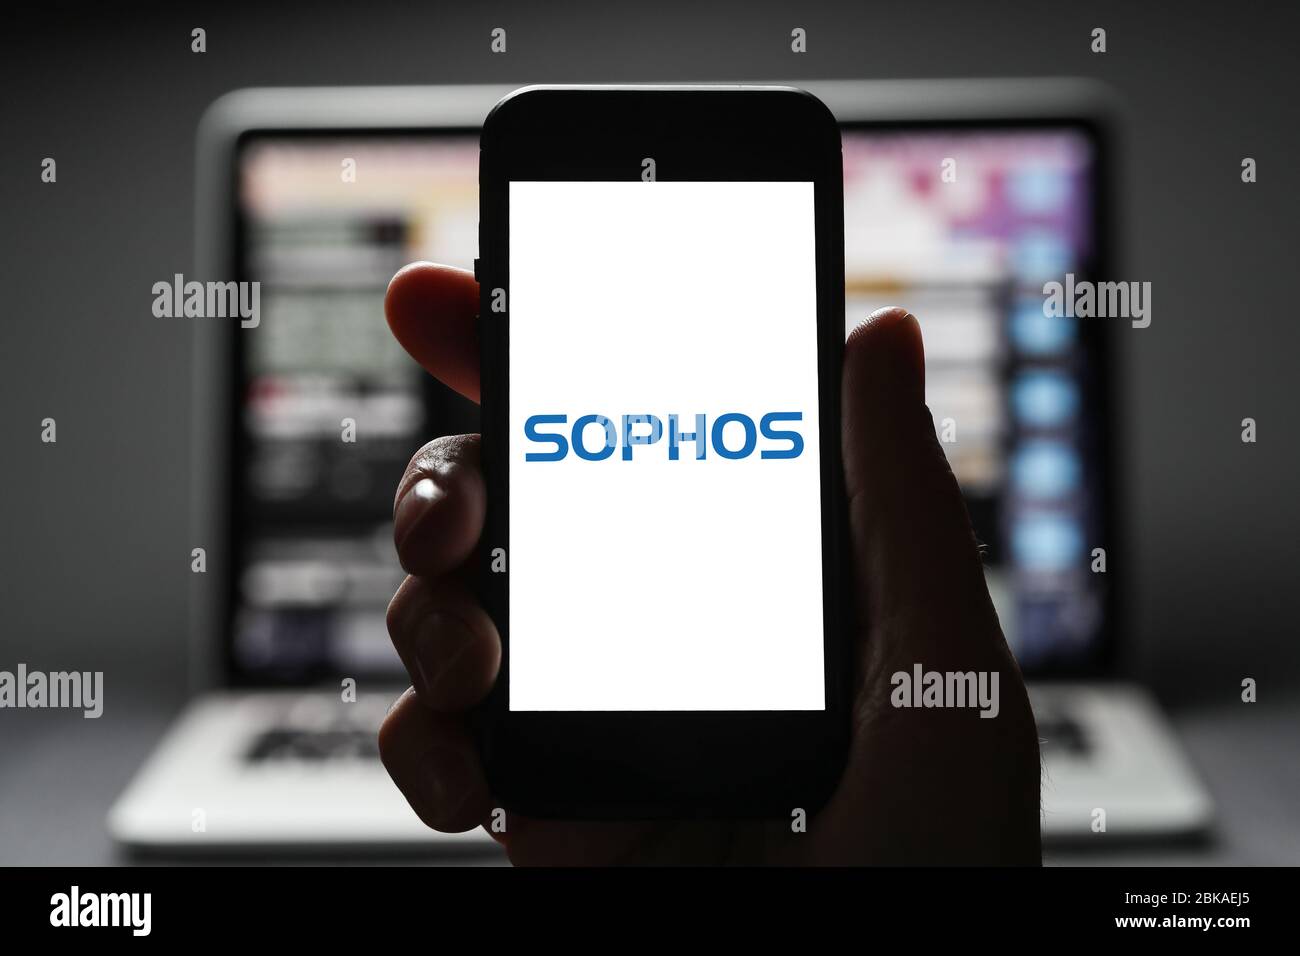 Ein Mann, der das Logo für Sophos auf seinem iphone anschaut. Sophos ist ein Software-Entwicklungsunternehmen für Cyber-Sicherheit. (Nur Redaktionelle Verwendung) Stockfoto